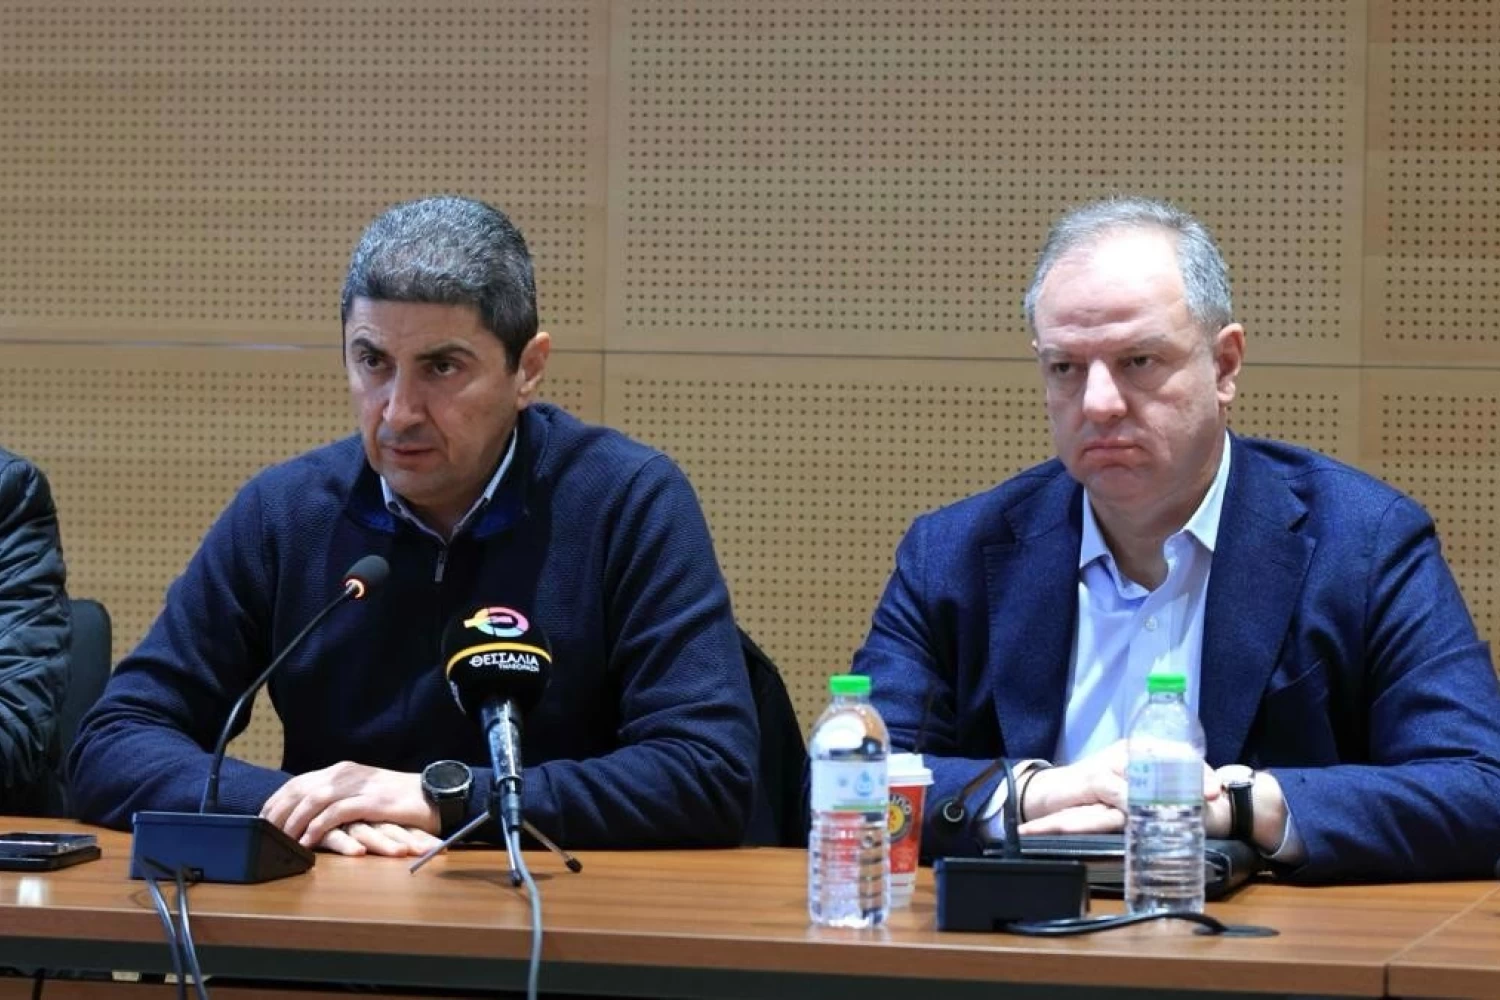 Σταμενίτης και Αυγενάκης ανακοίνωσαν αύξηση των χρημάτων στα σχέδια βελτίωσης